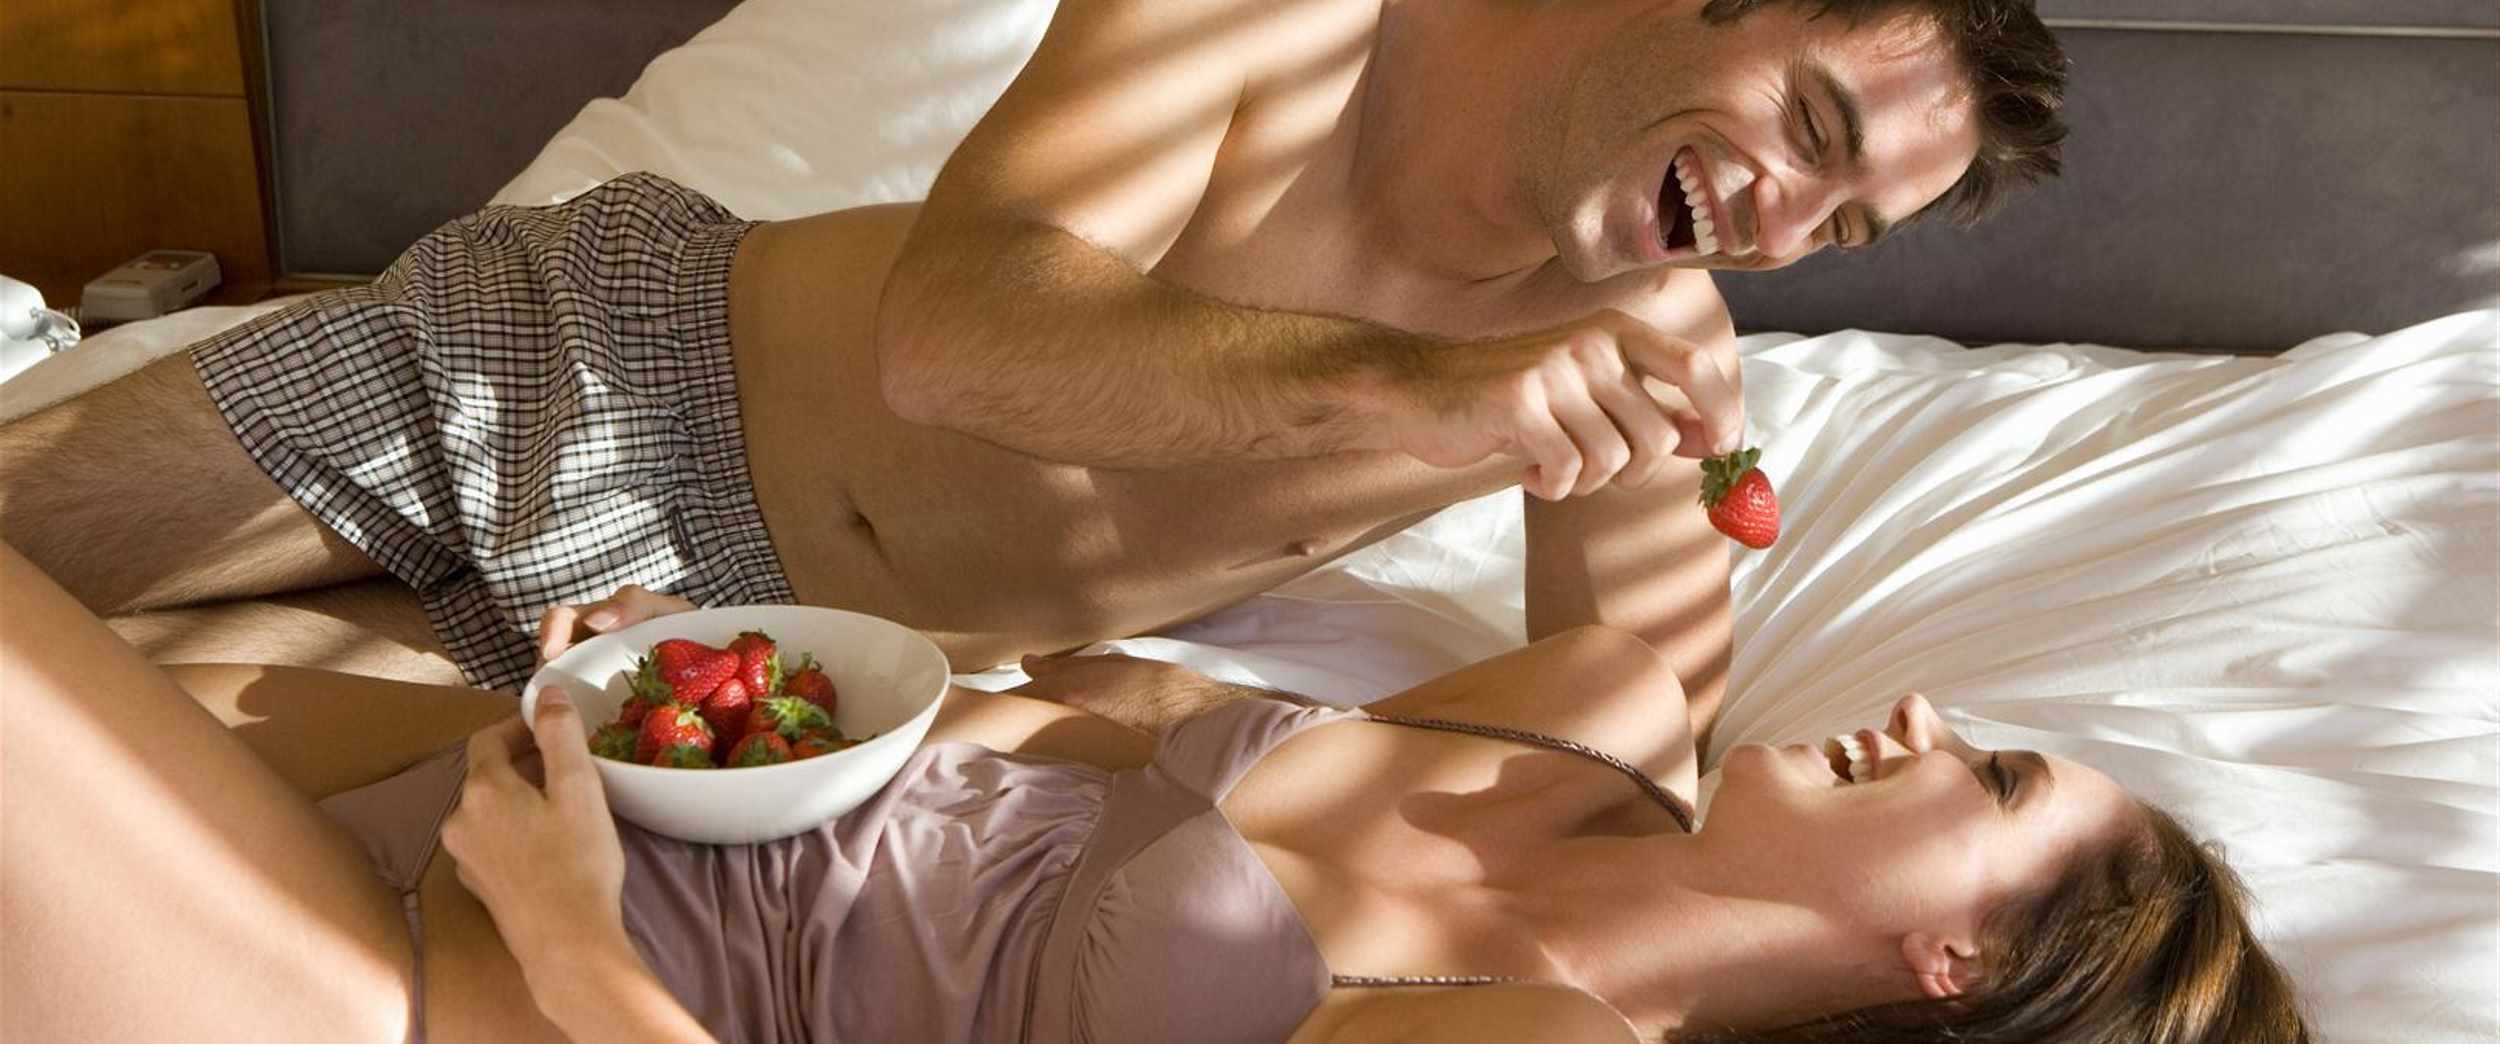 Телочку с небритой мандой мужик накормил спермой после секса 